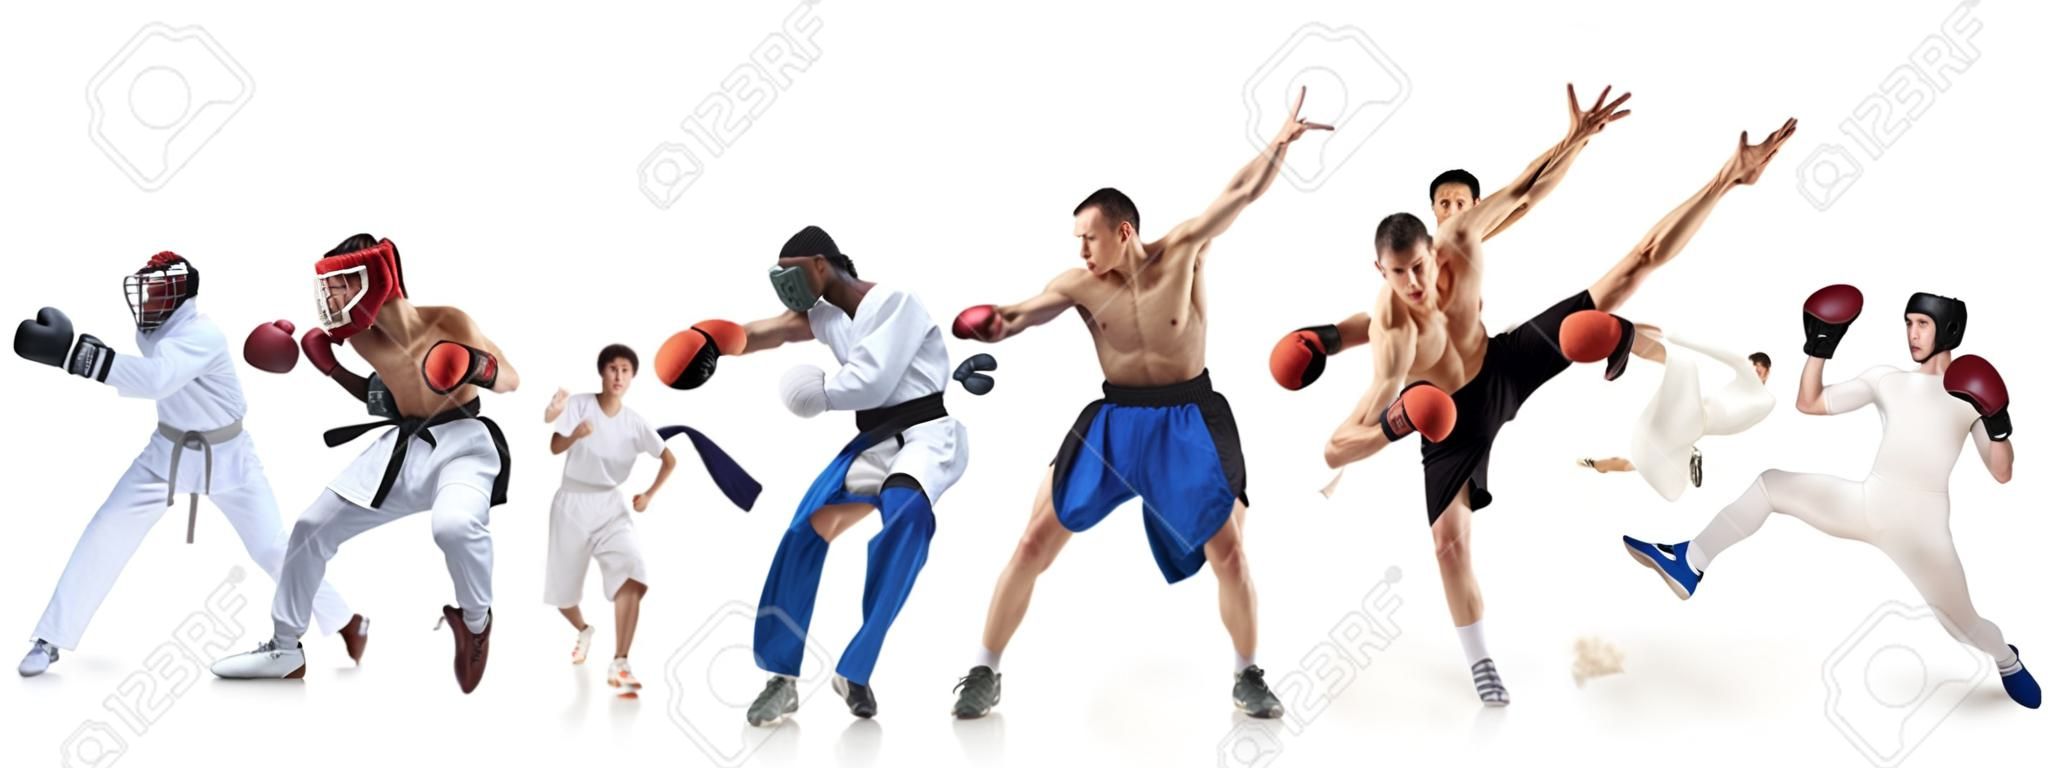 ボクシング、サッカー、アメリカンフットボール、バスケットボール、アイスホッケー、フェンシング、ジョギング、テコンドー、テニスに関するスポーツコラージュ